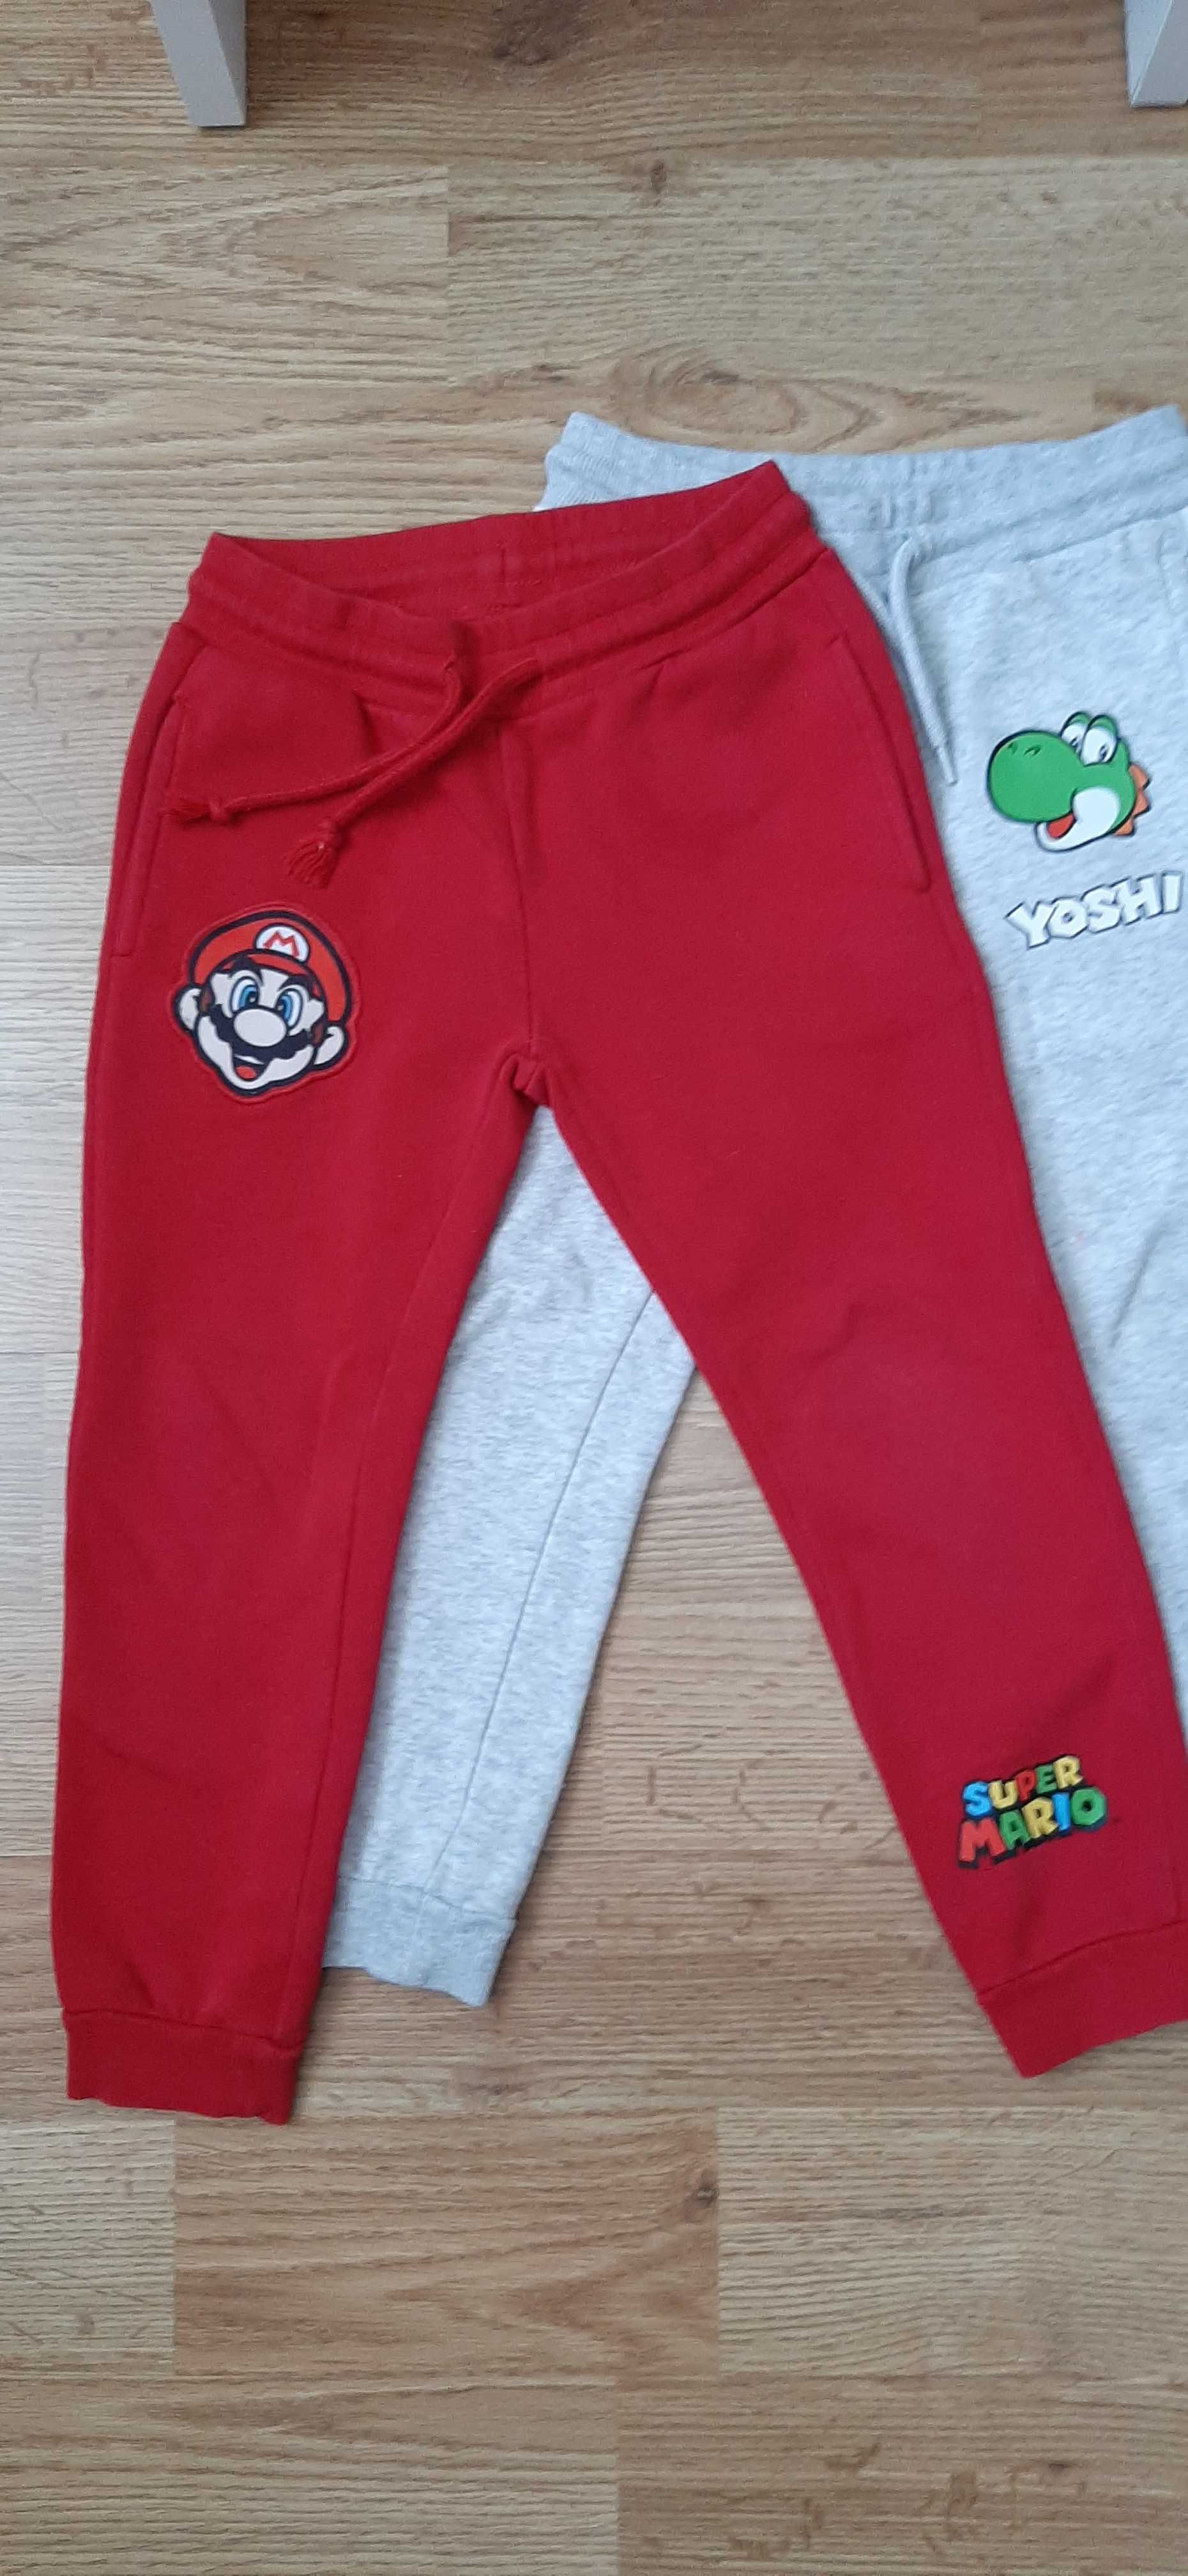 3 pary spodnie dresy chłopiece Super Mario r 110 c&a